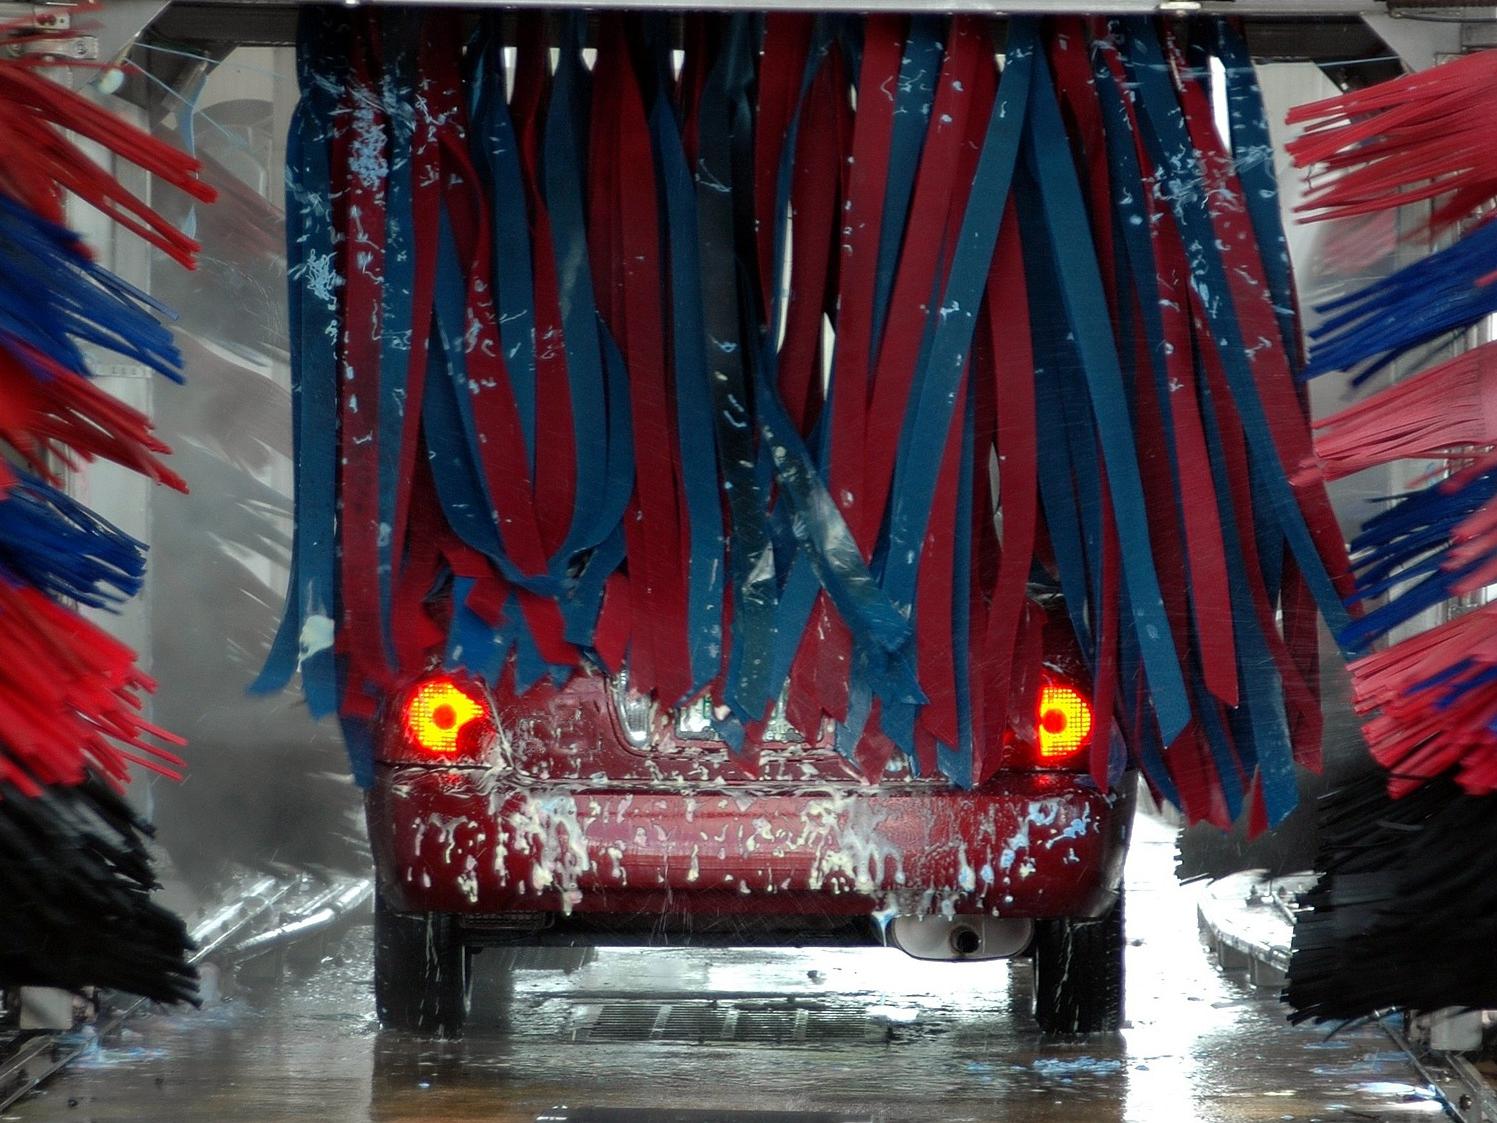 Autowaschen im Winter: Die 8 wichtigsten Tipps